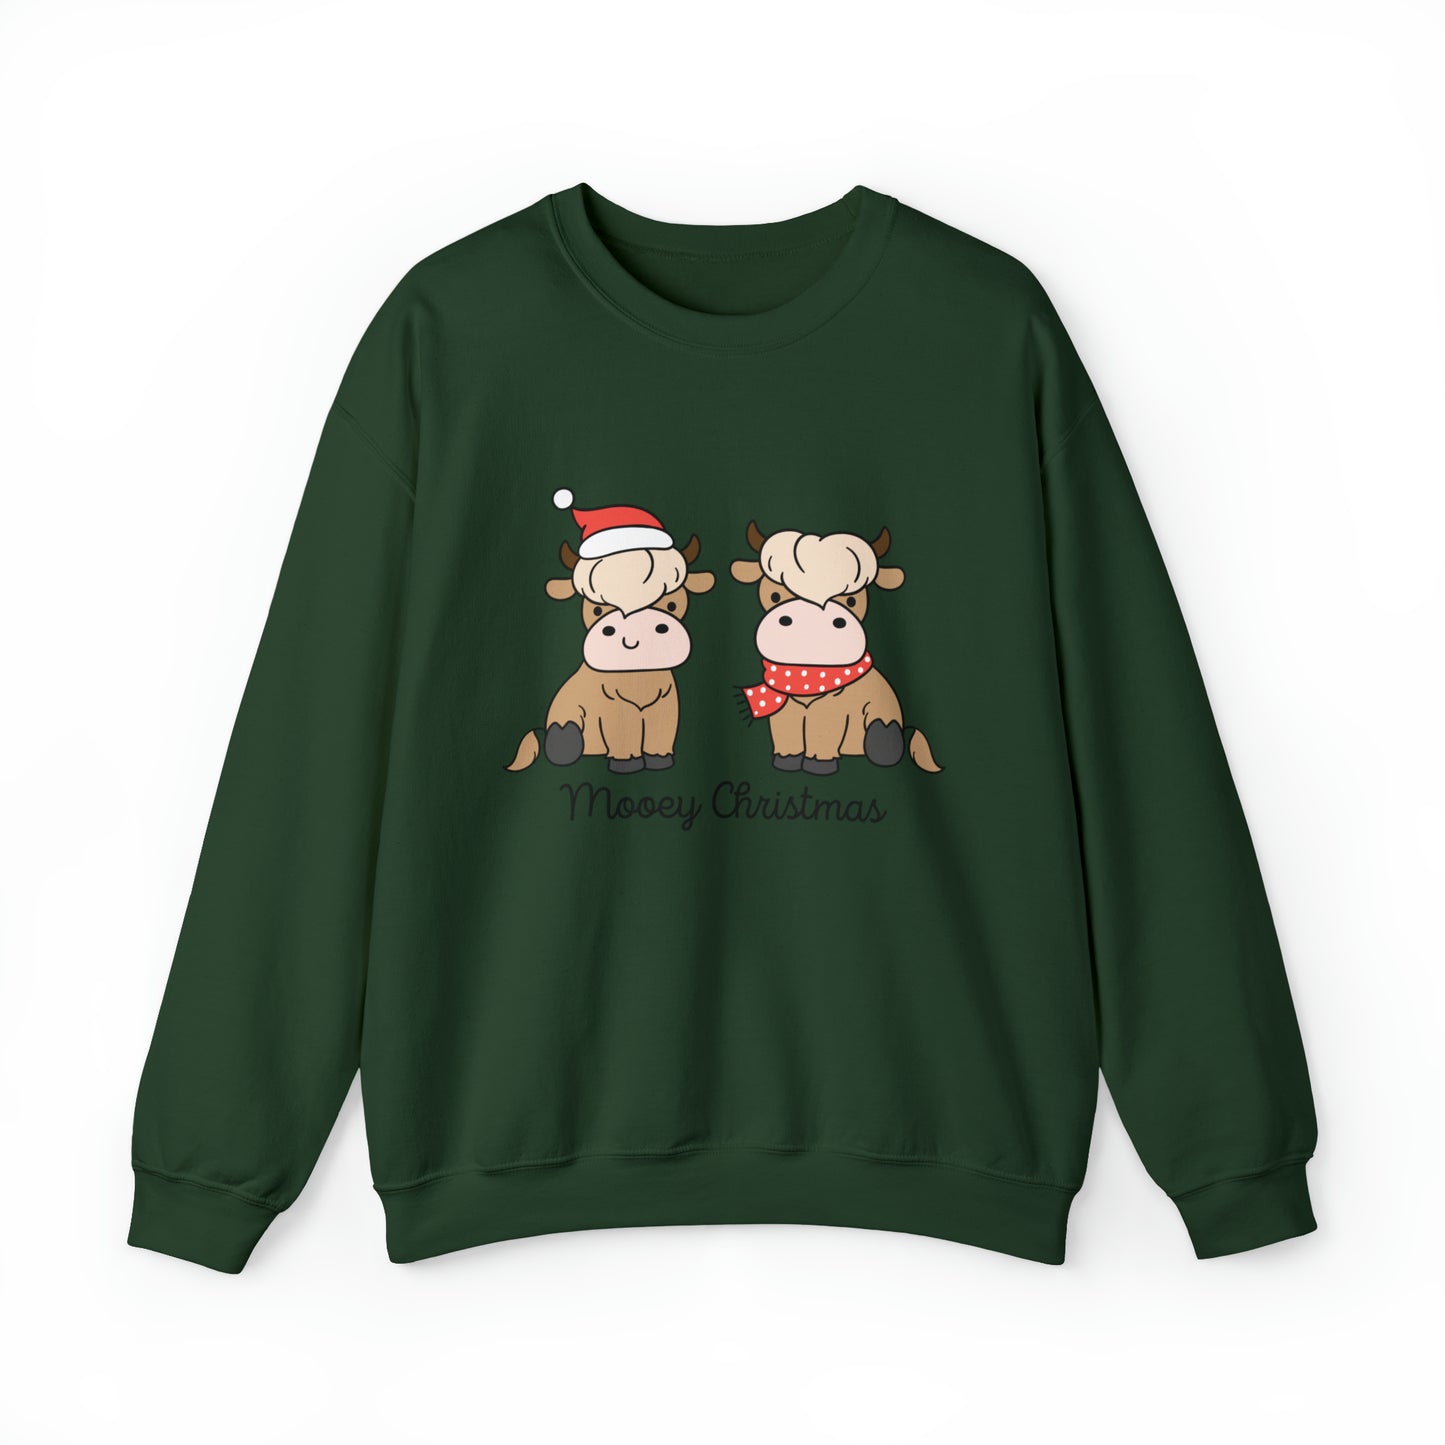 Money Christmas Unisex Sweatshirt